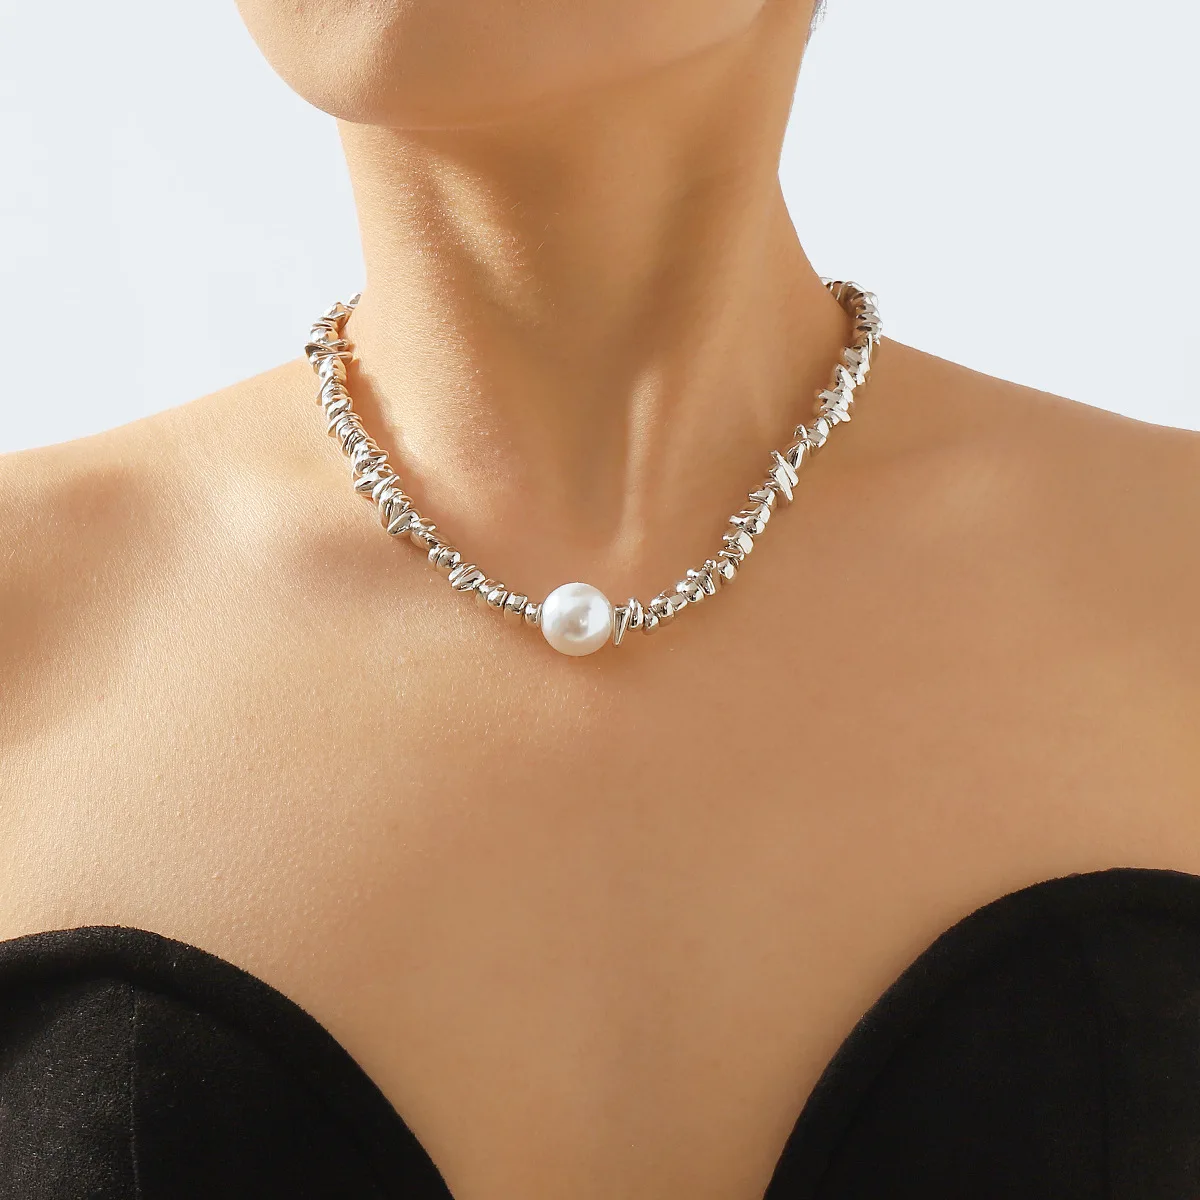 

Роскошное элегантное простое и индивидуализированное черно-белое контрастное дизайнерское ожерелье с бусинами и цепочкой до ключиц